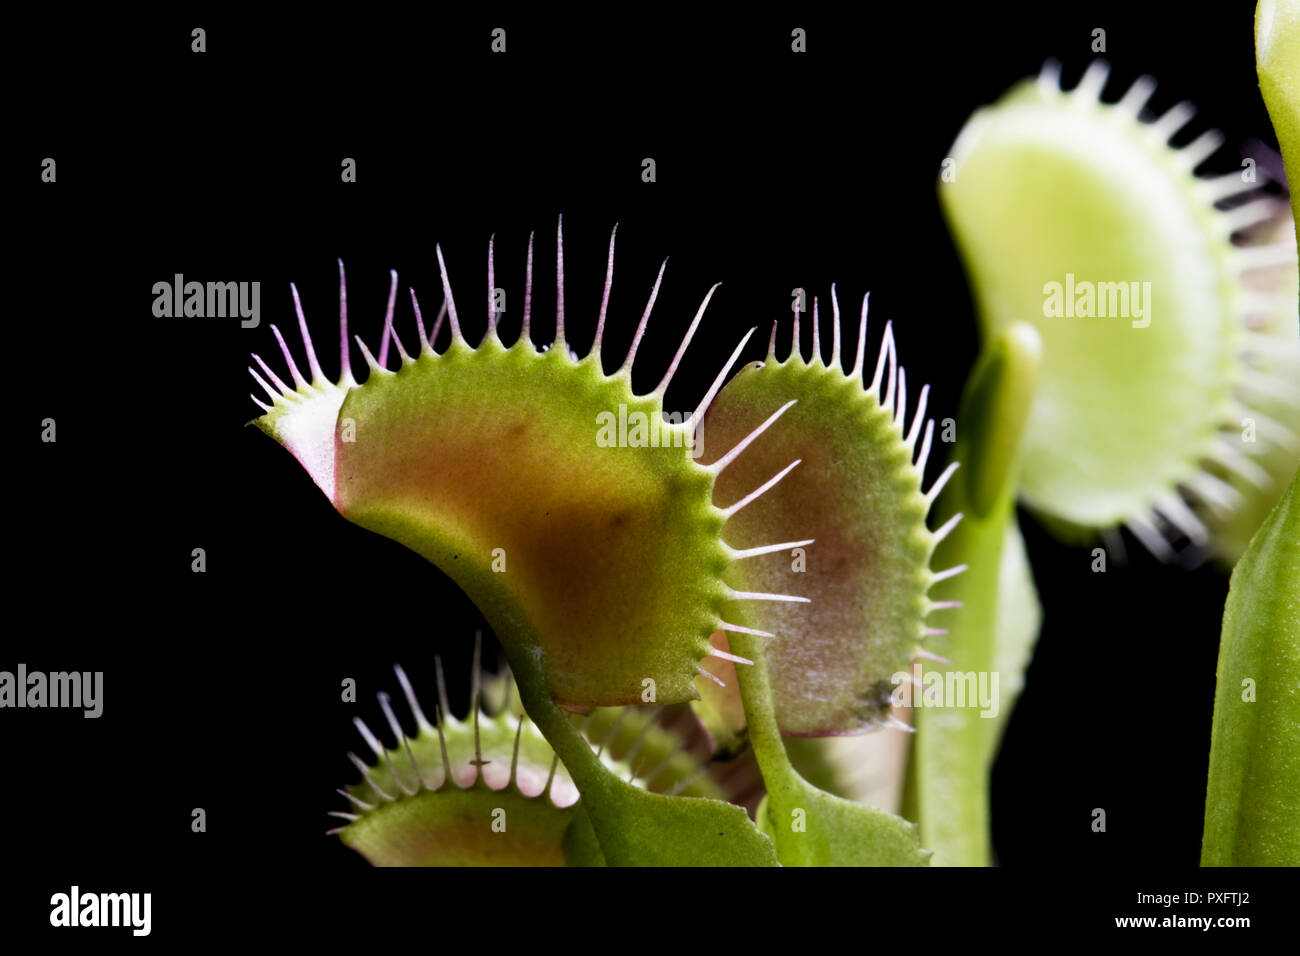 Jib colpo di Venus fly trap foglie su uno sfondo nero. Piante carnivore che cattura e mangia insetti. Killer botanica. La natura da vicino. Foto Stock